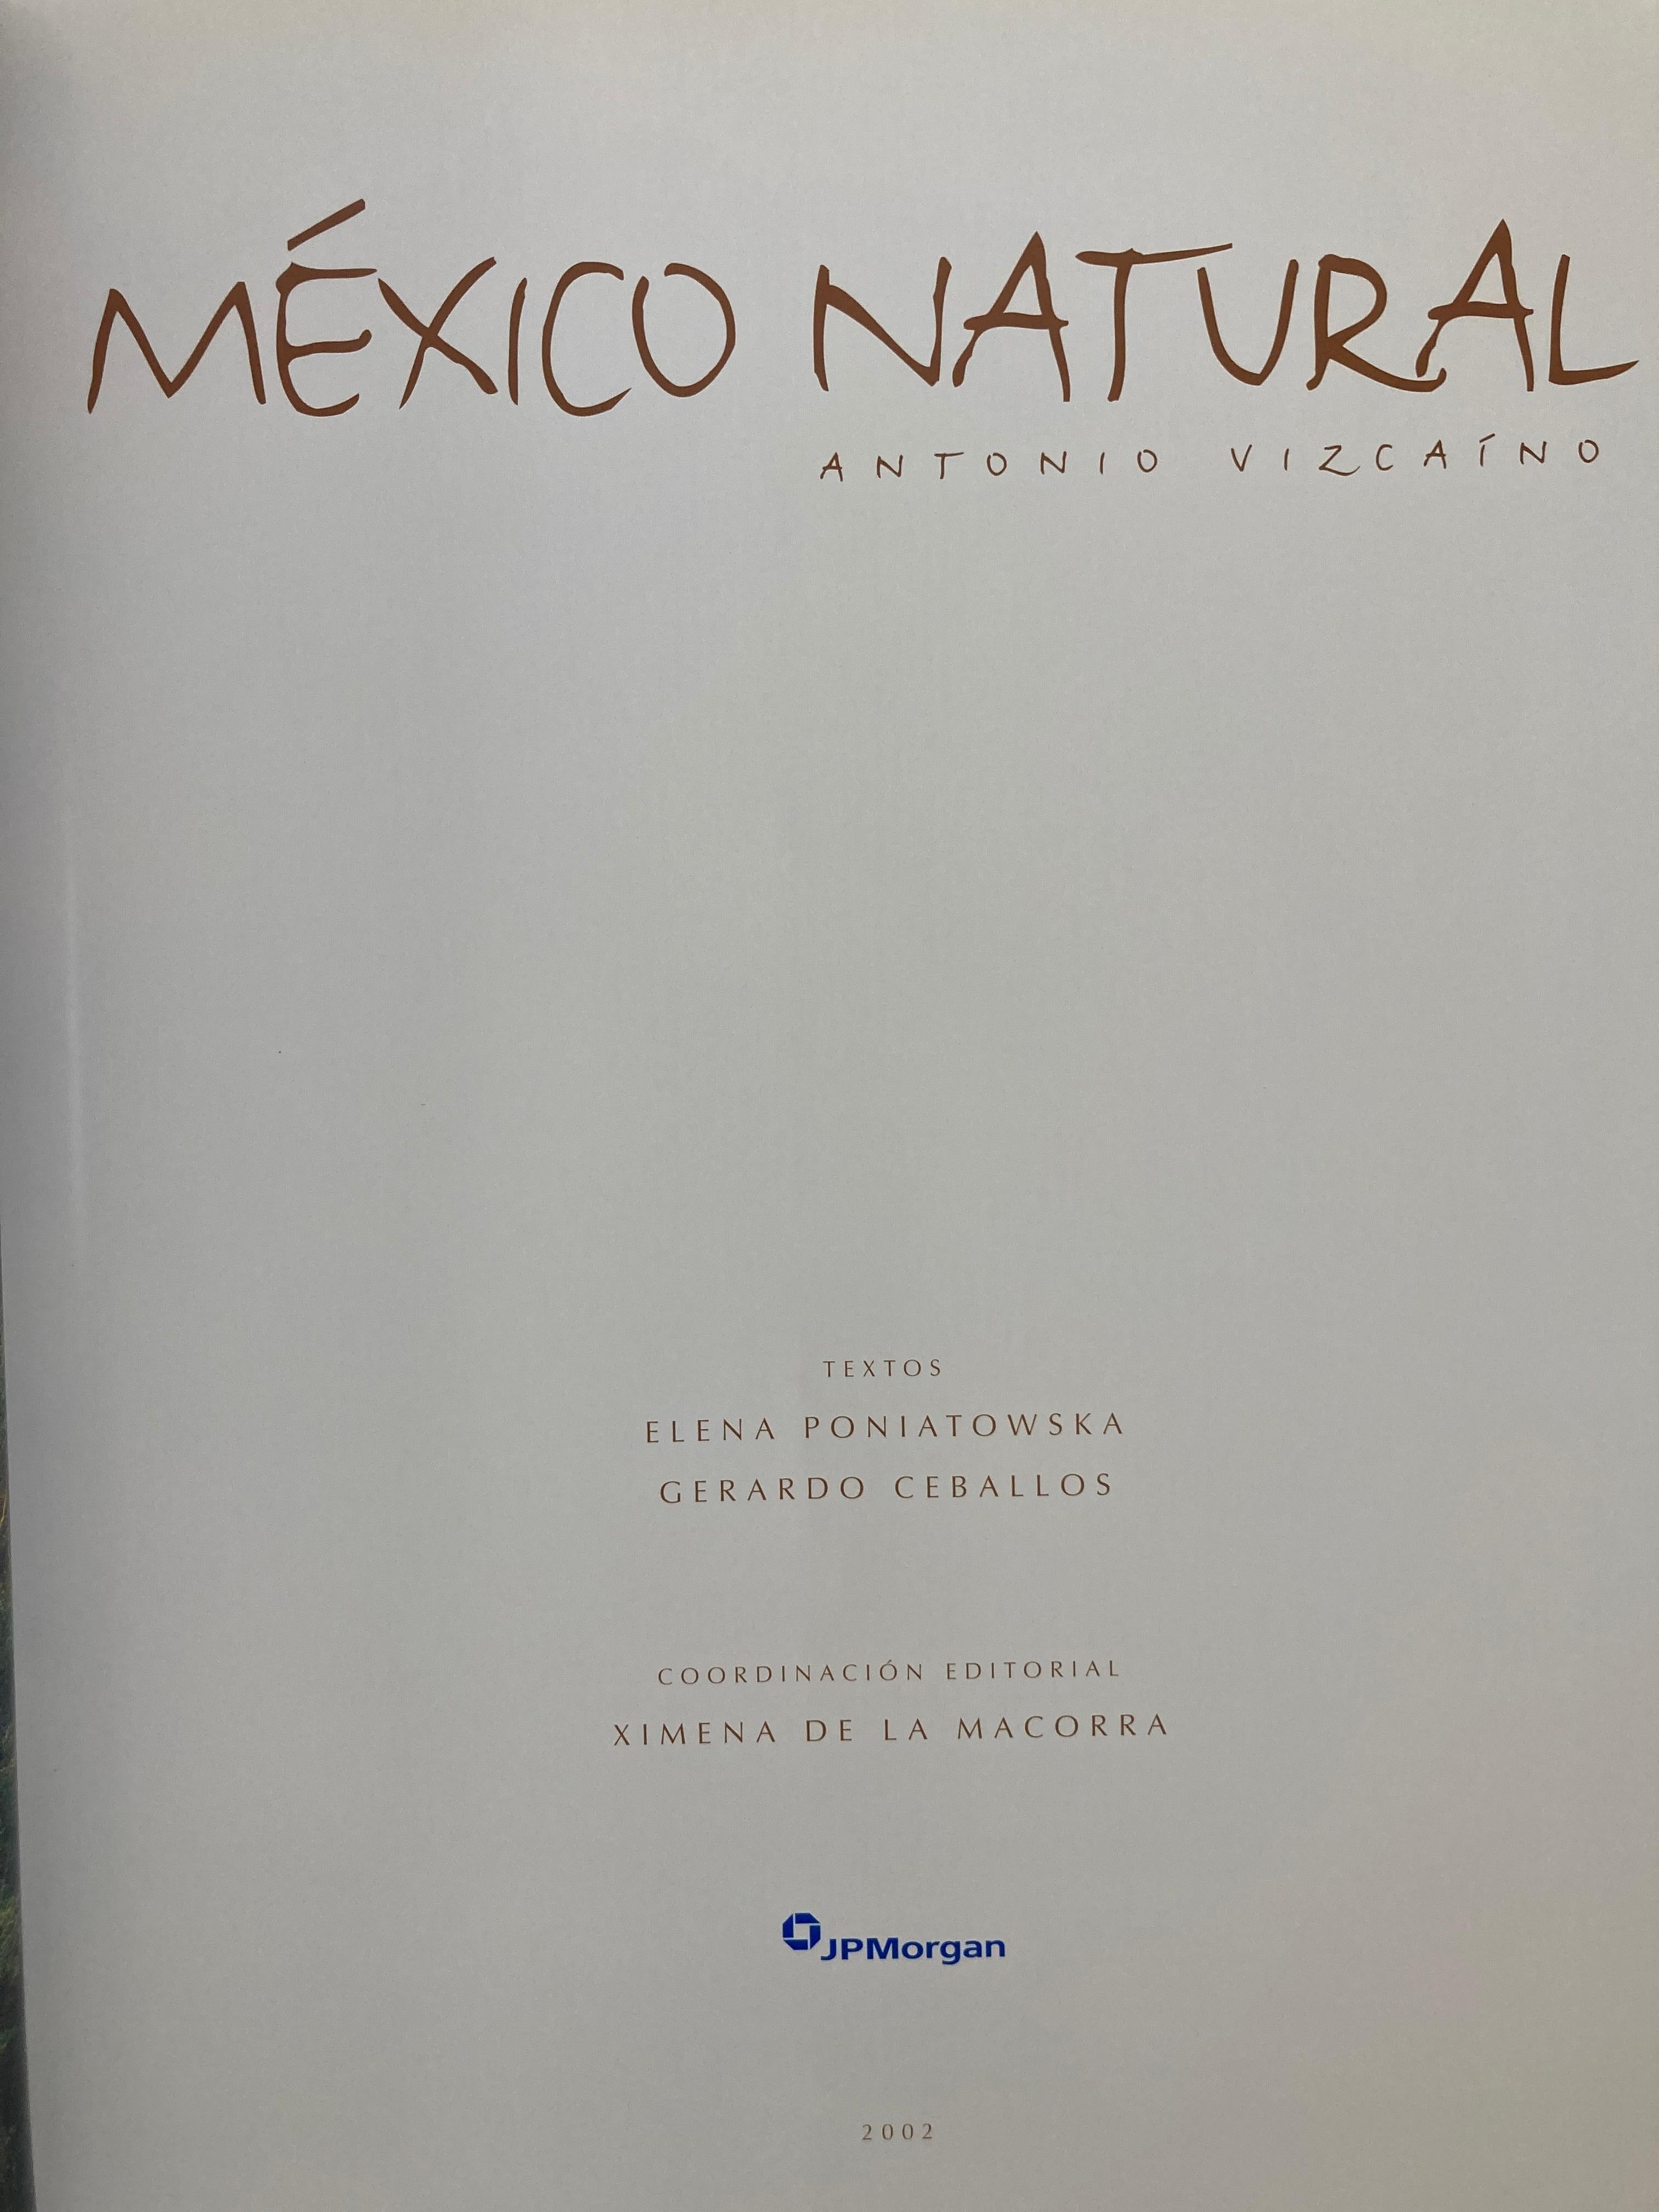 20th Century Mexico Natural by Antonio Vizcaino Hardcover Book